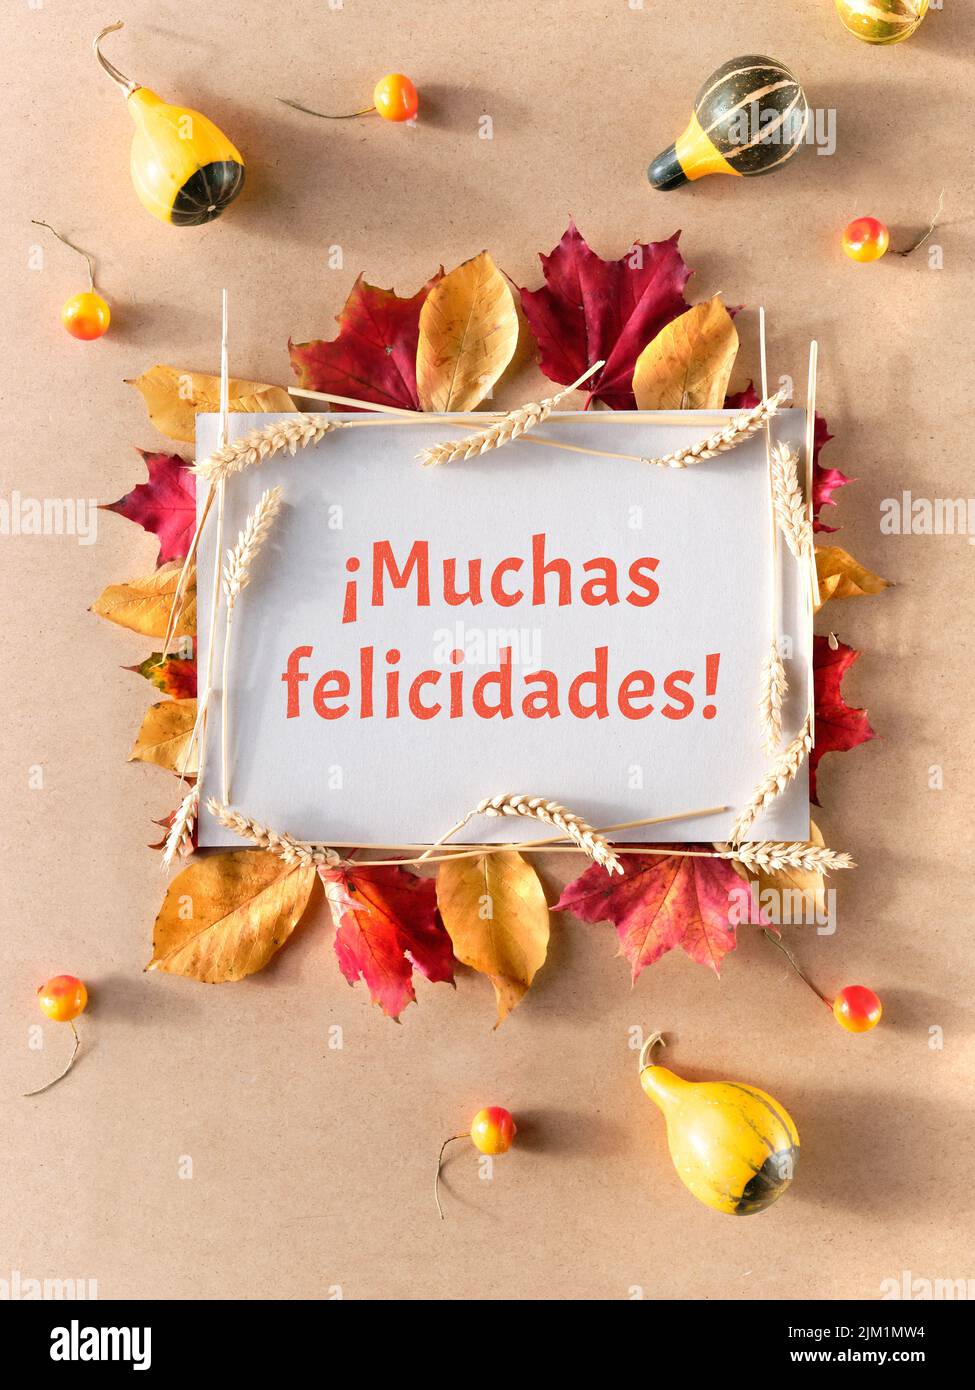 Marco otoñal, texto de bienvenida Muchas felicidades significa felicitaciones en español. Plano con hojas de otoño naturales, Foto de stock